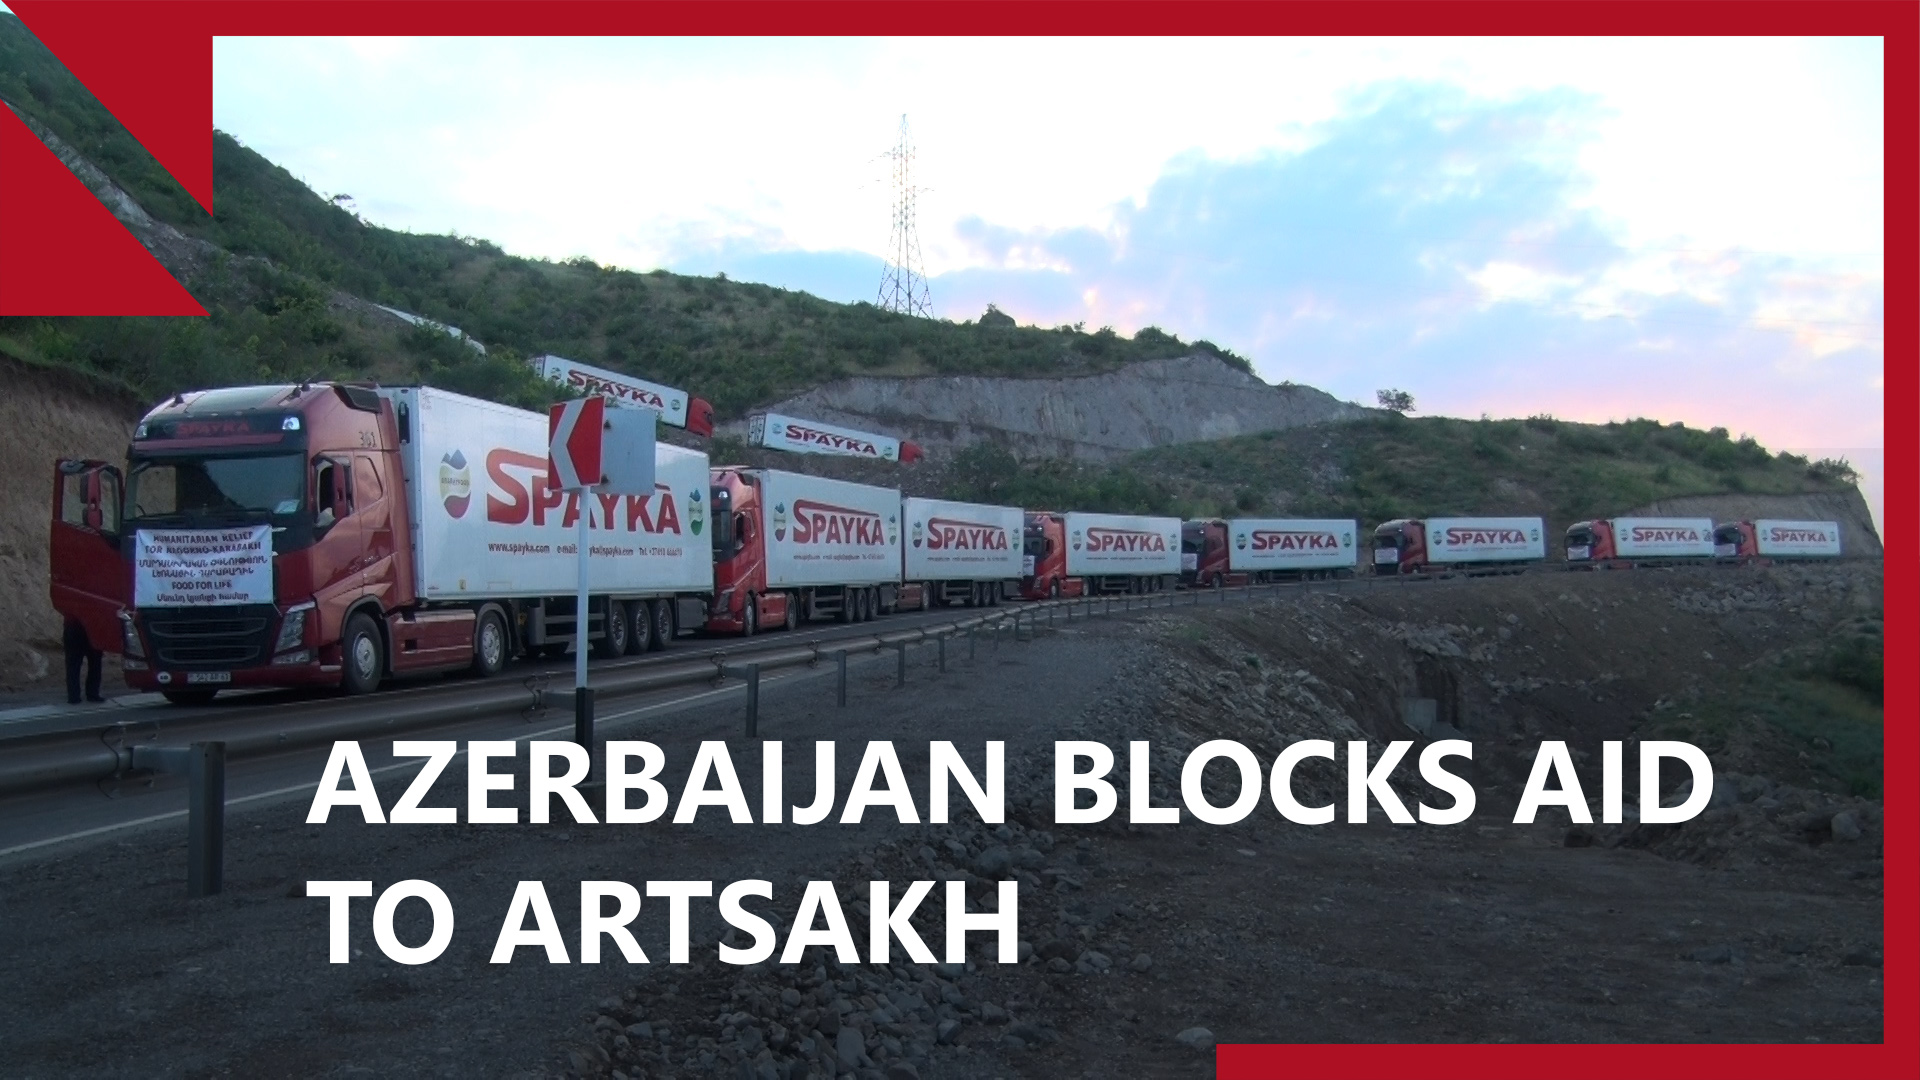 Azerbaijan blocks humanitarian aid convoy to Nagorno-Karabakh